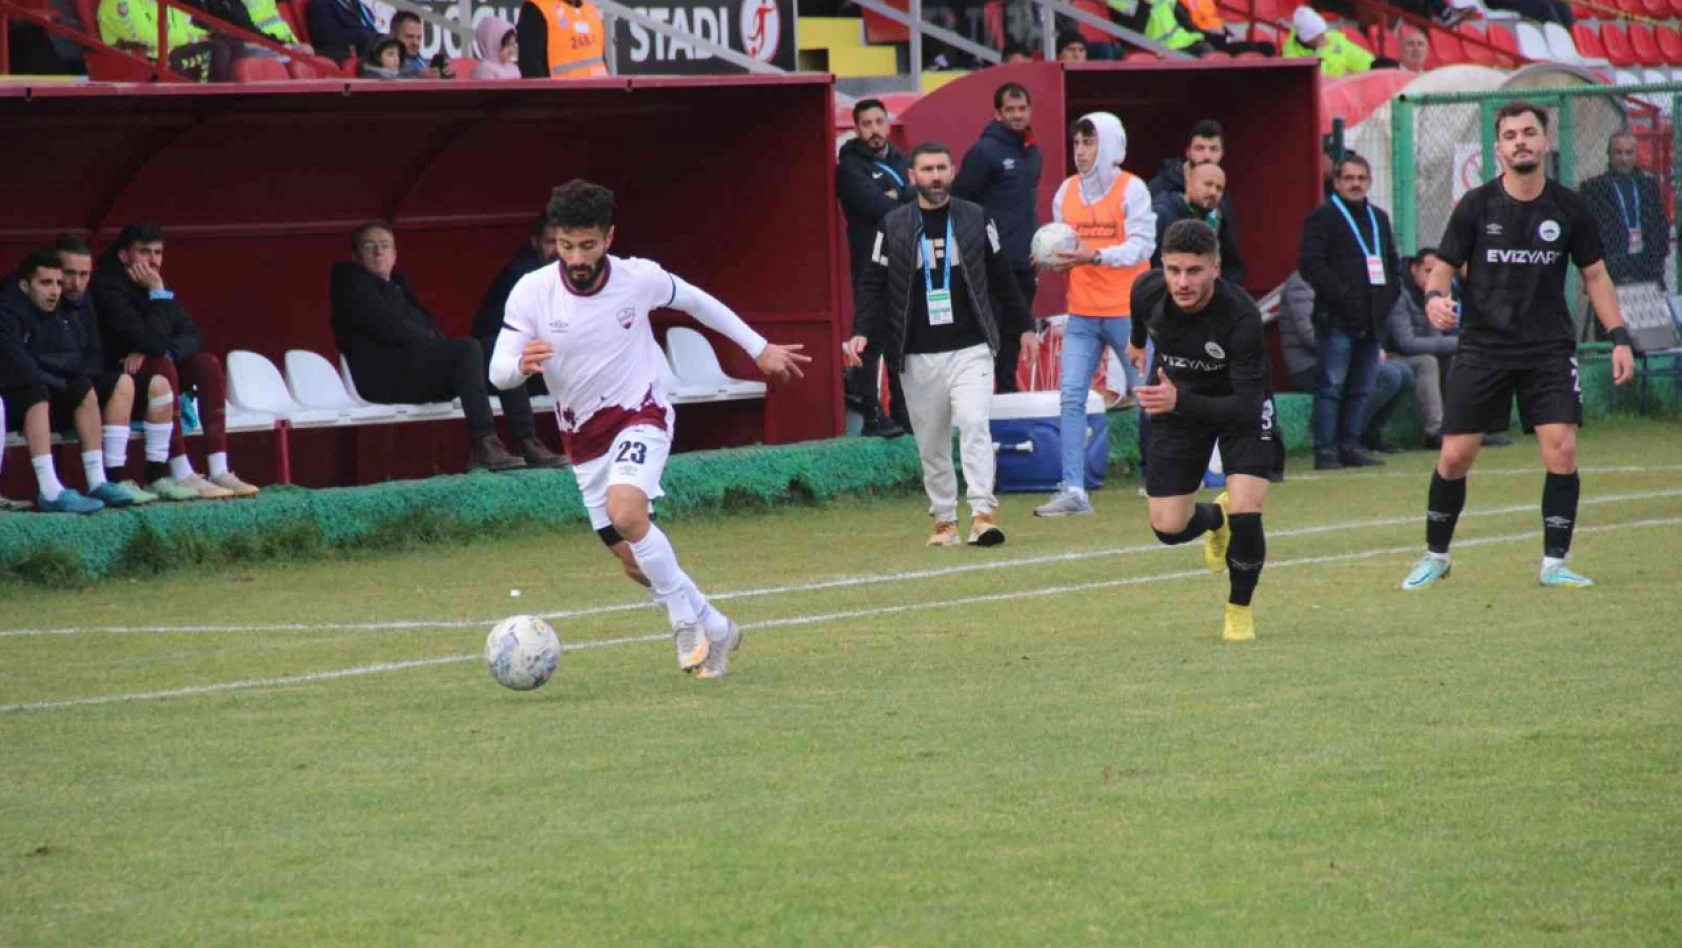 23 Elazığ FK'da Eren Çinkılınç, sezonu kapattı